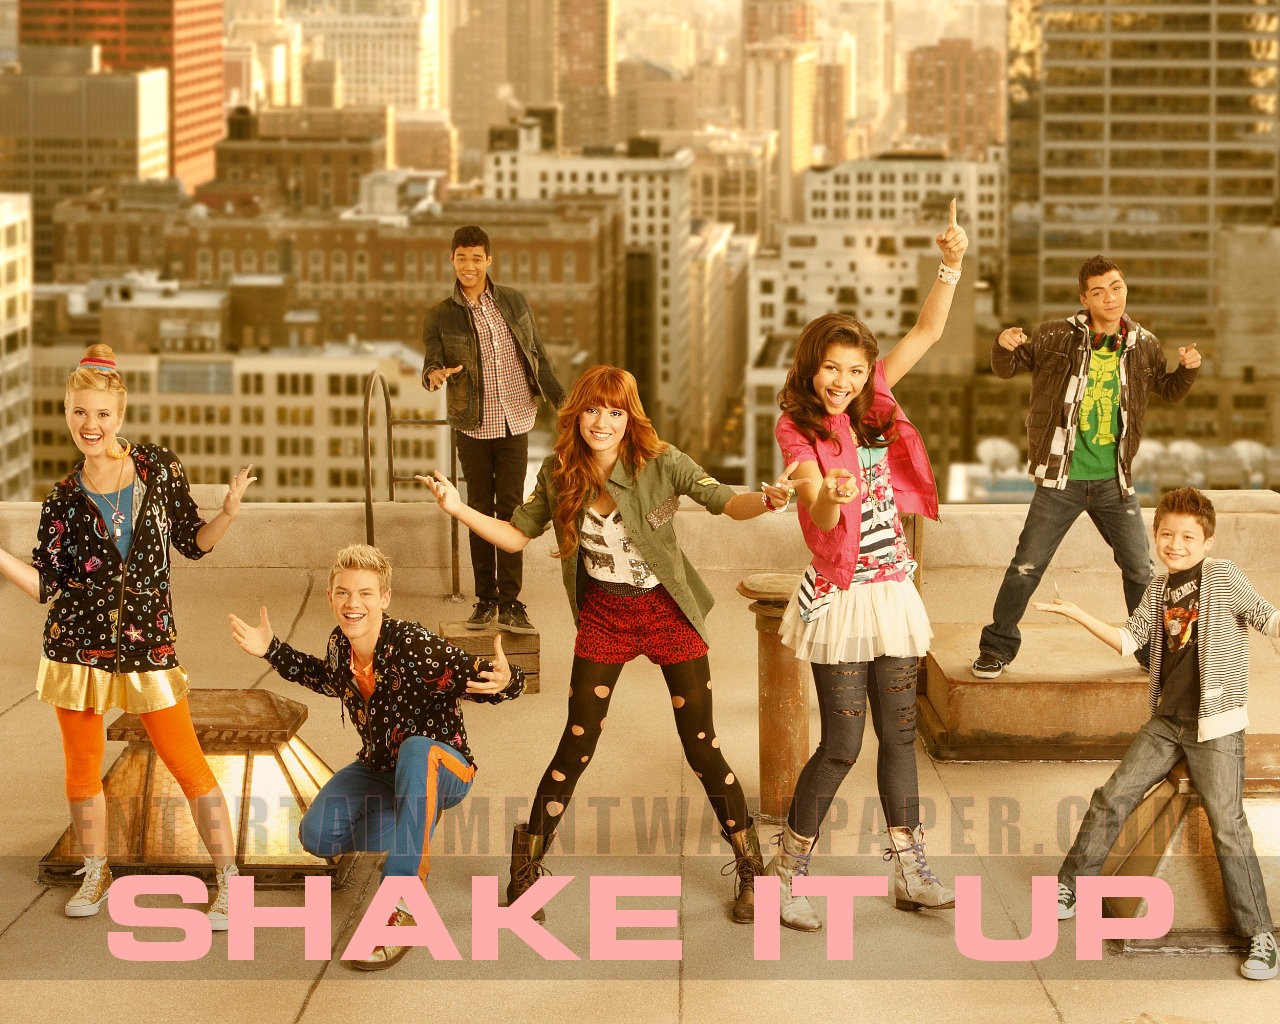 Shake It Up Wallpaper Image Qulari